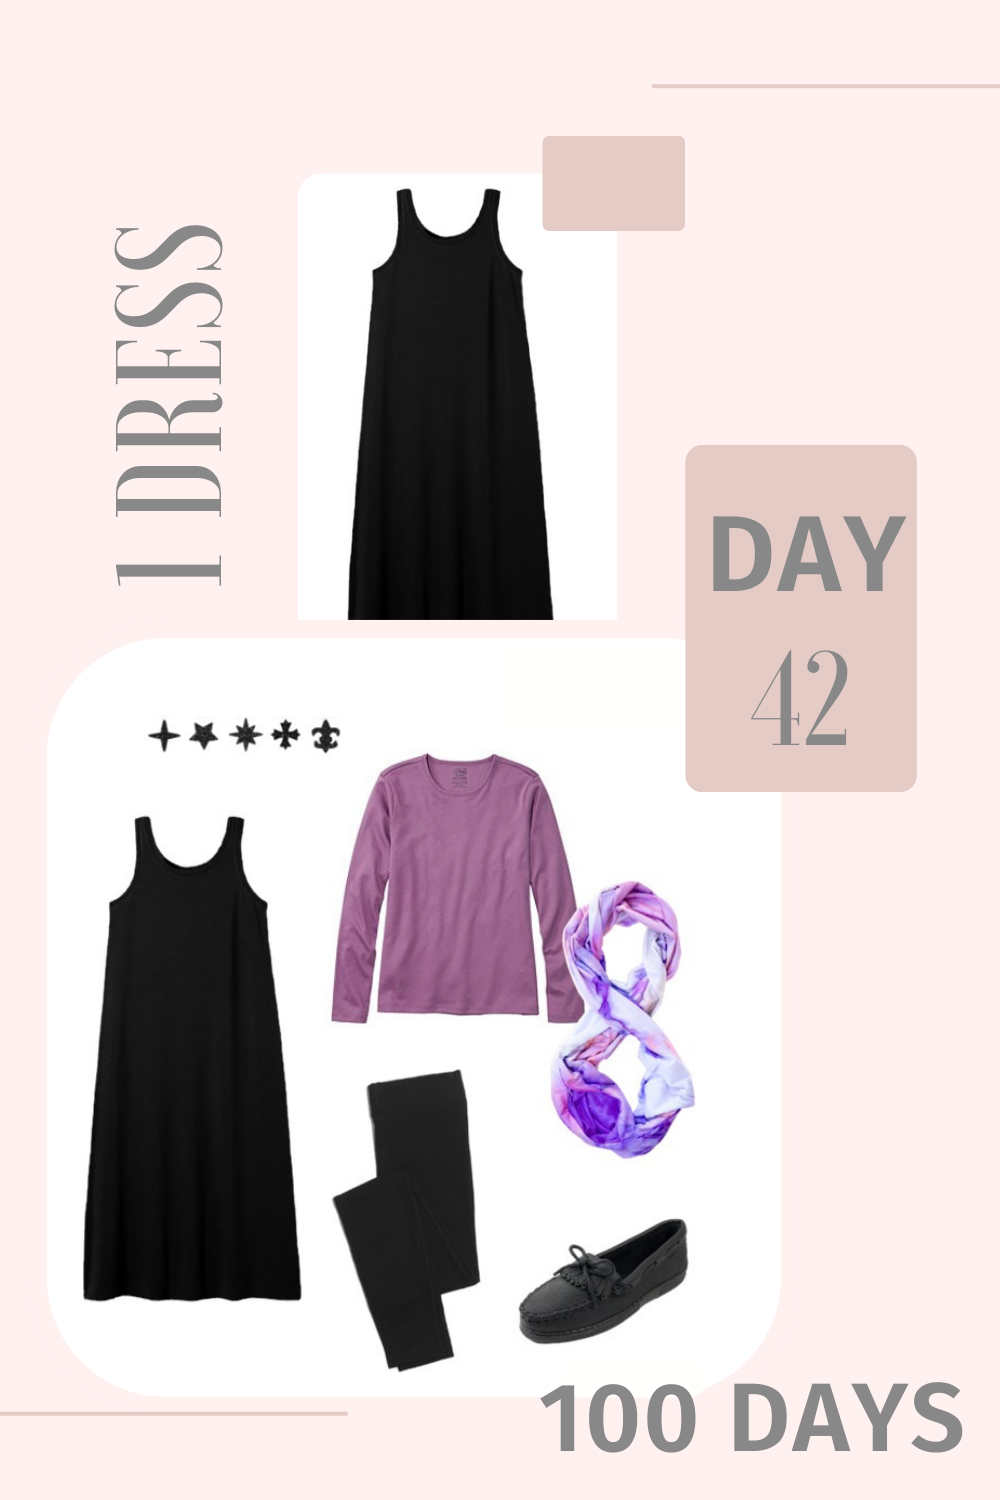 1 Dress 100 Days - Day 42